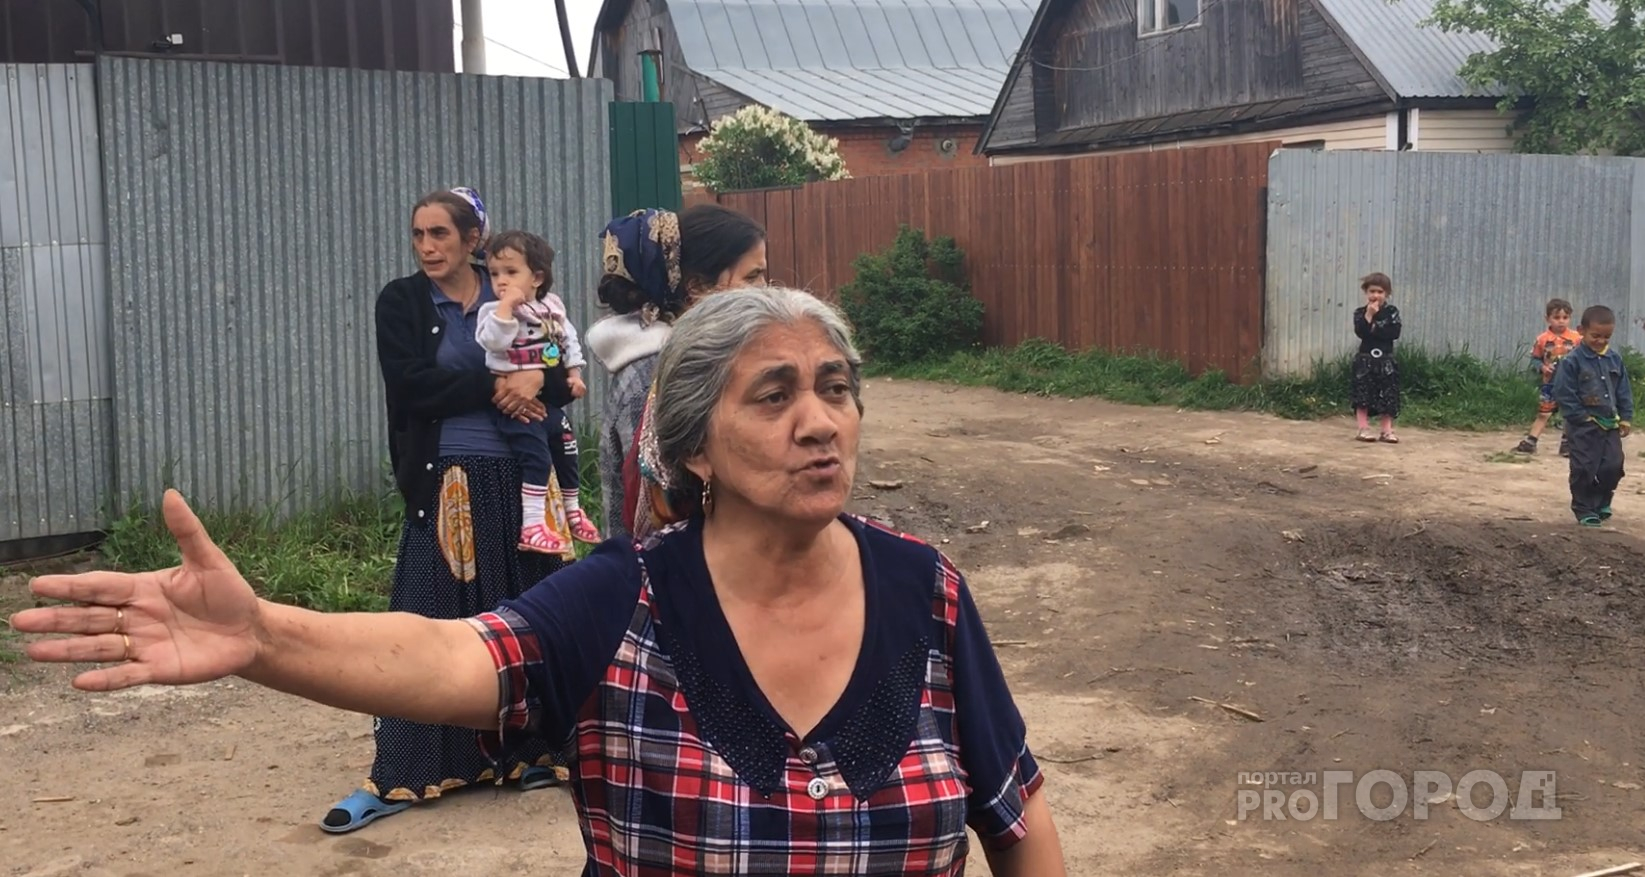 Цыганский табор из Альгешево выселяют на улицу: “Нам дали время - неделю, что будет после этого, мы не знаем”